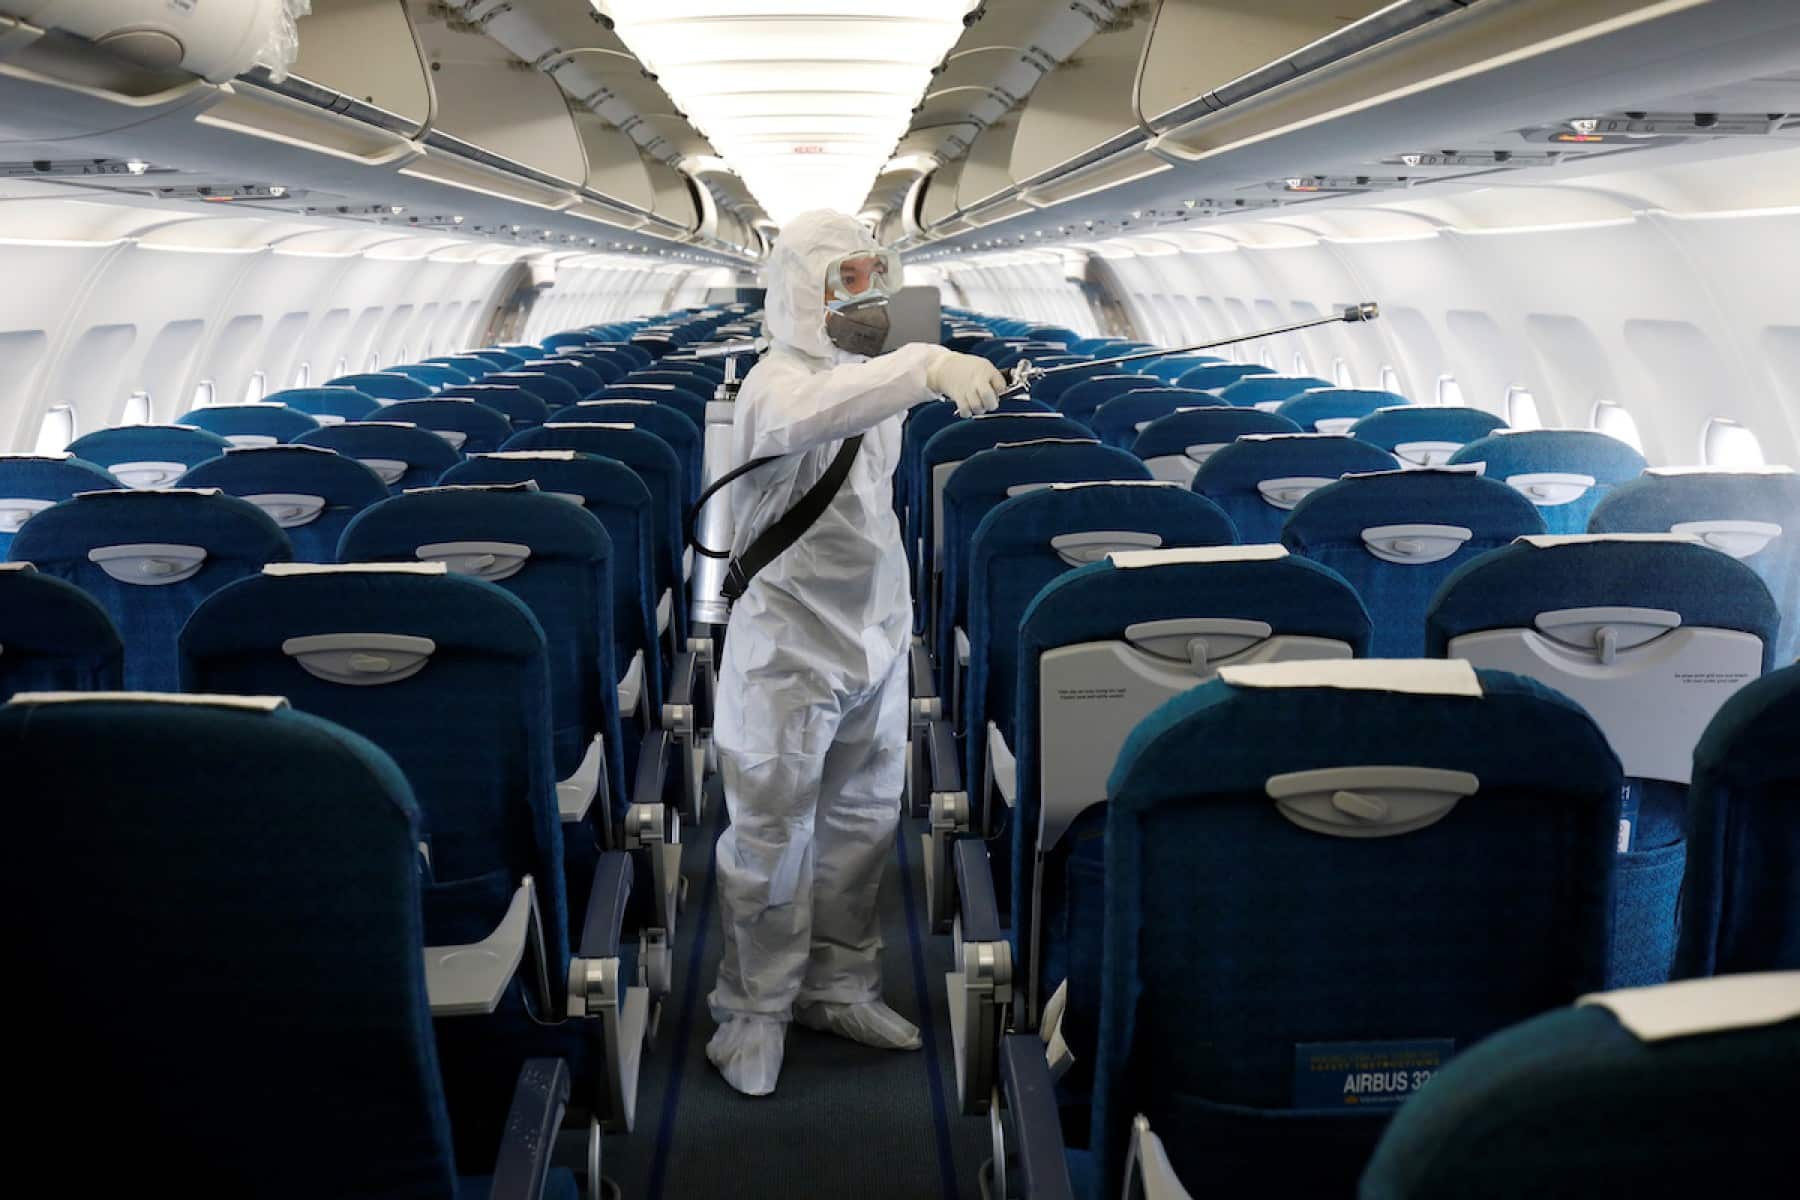 Las líneas aéreas aseguran que el riesgo de contagio por coronavirus en aviones "es mínimo"